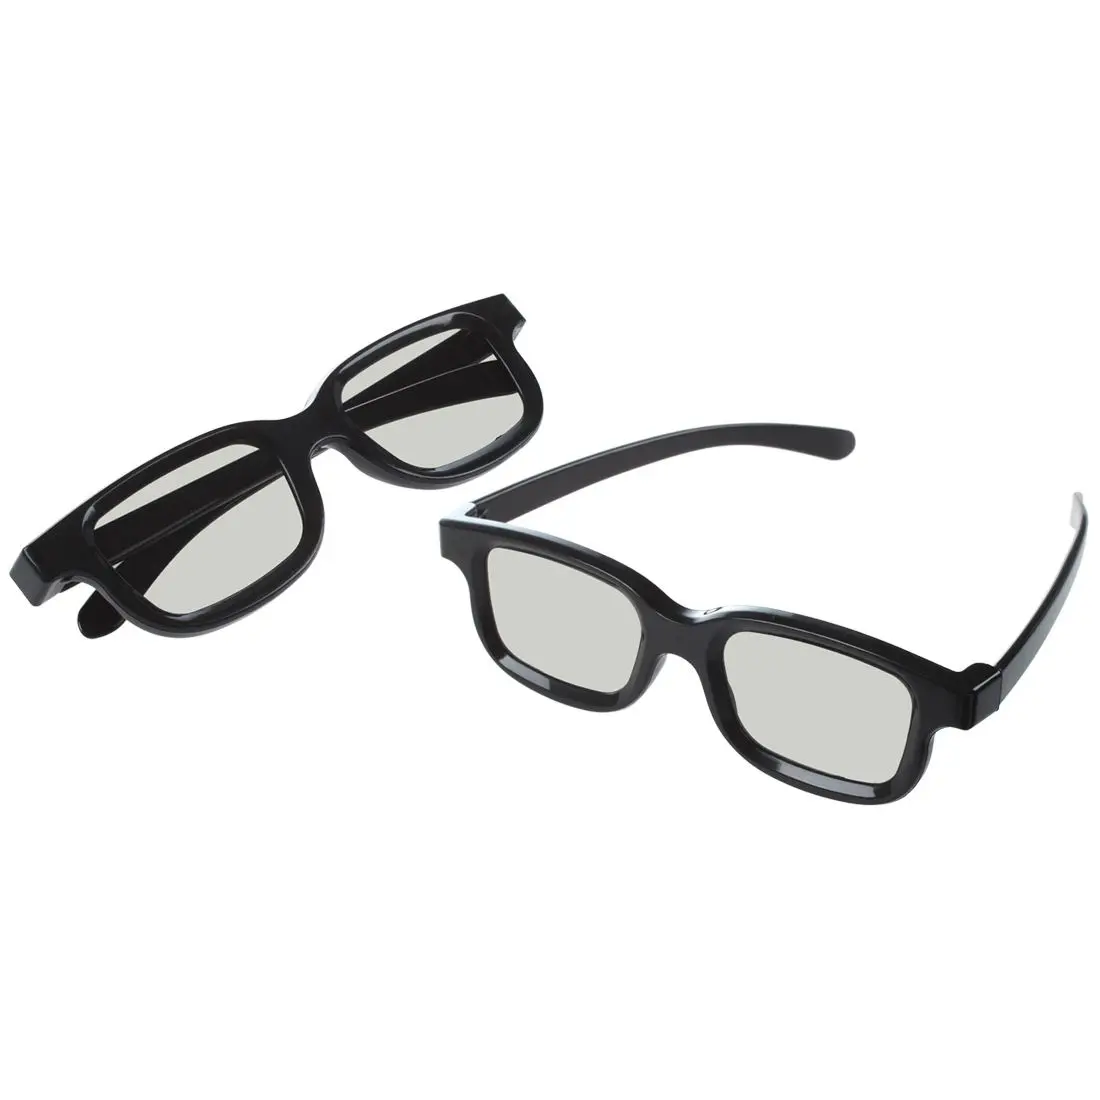 Лучшие предложения 3D очки для LG cinema 3D tv-2 пары